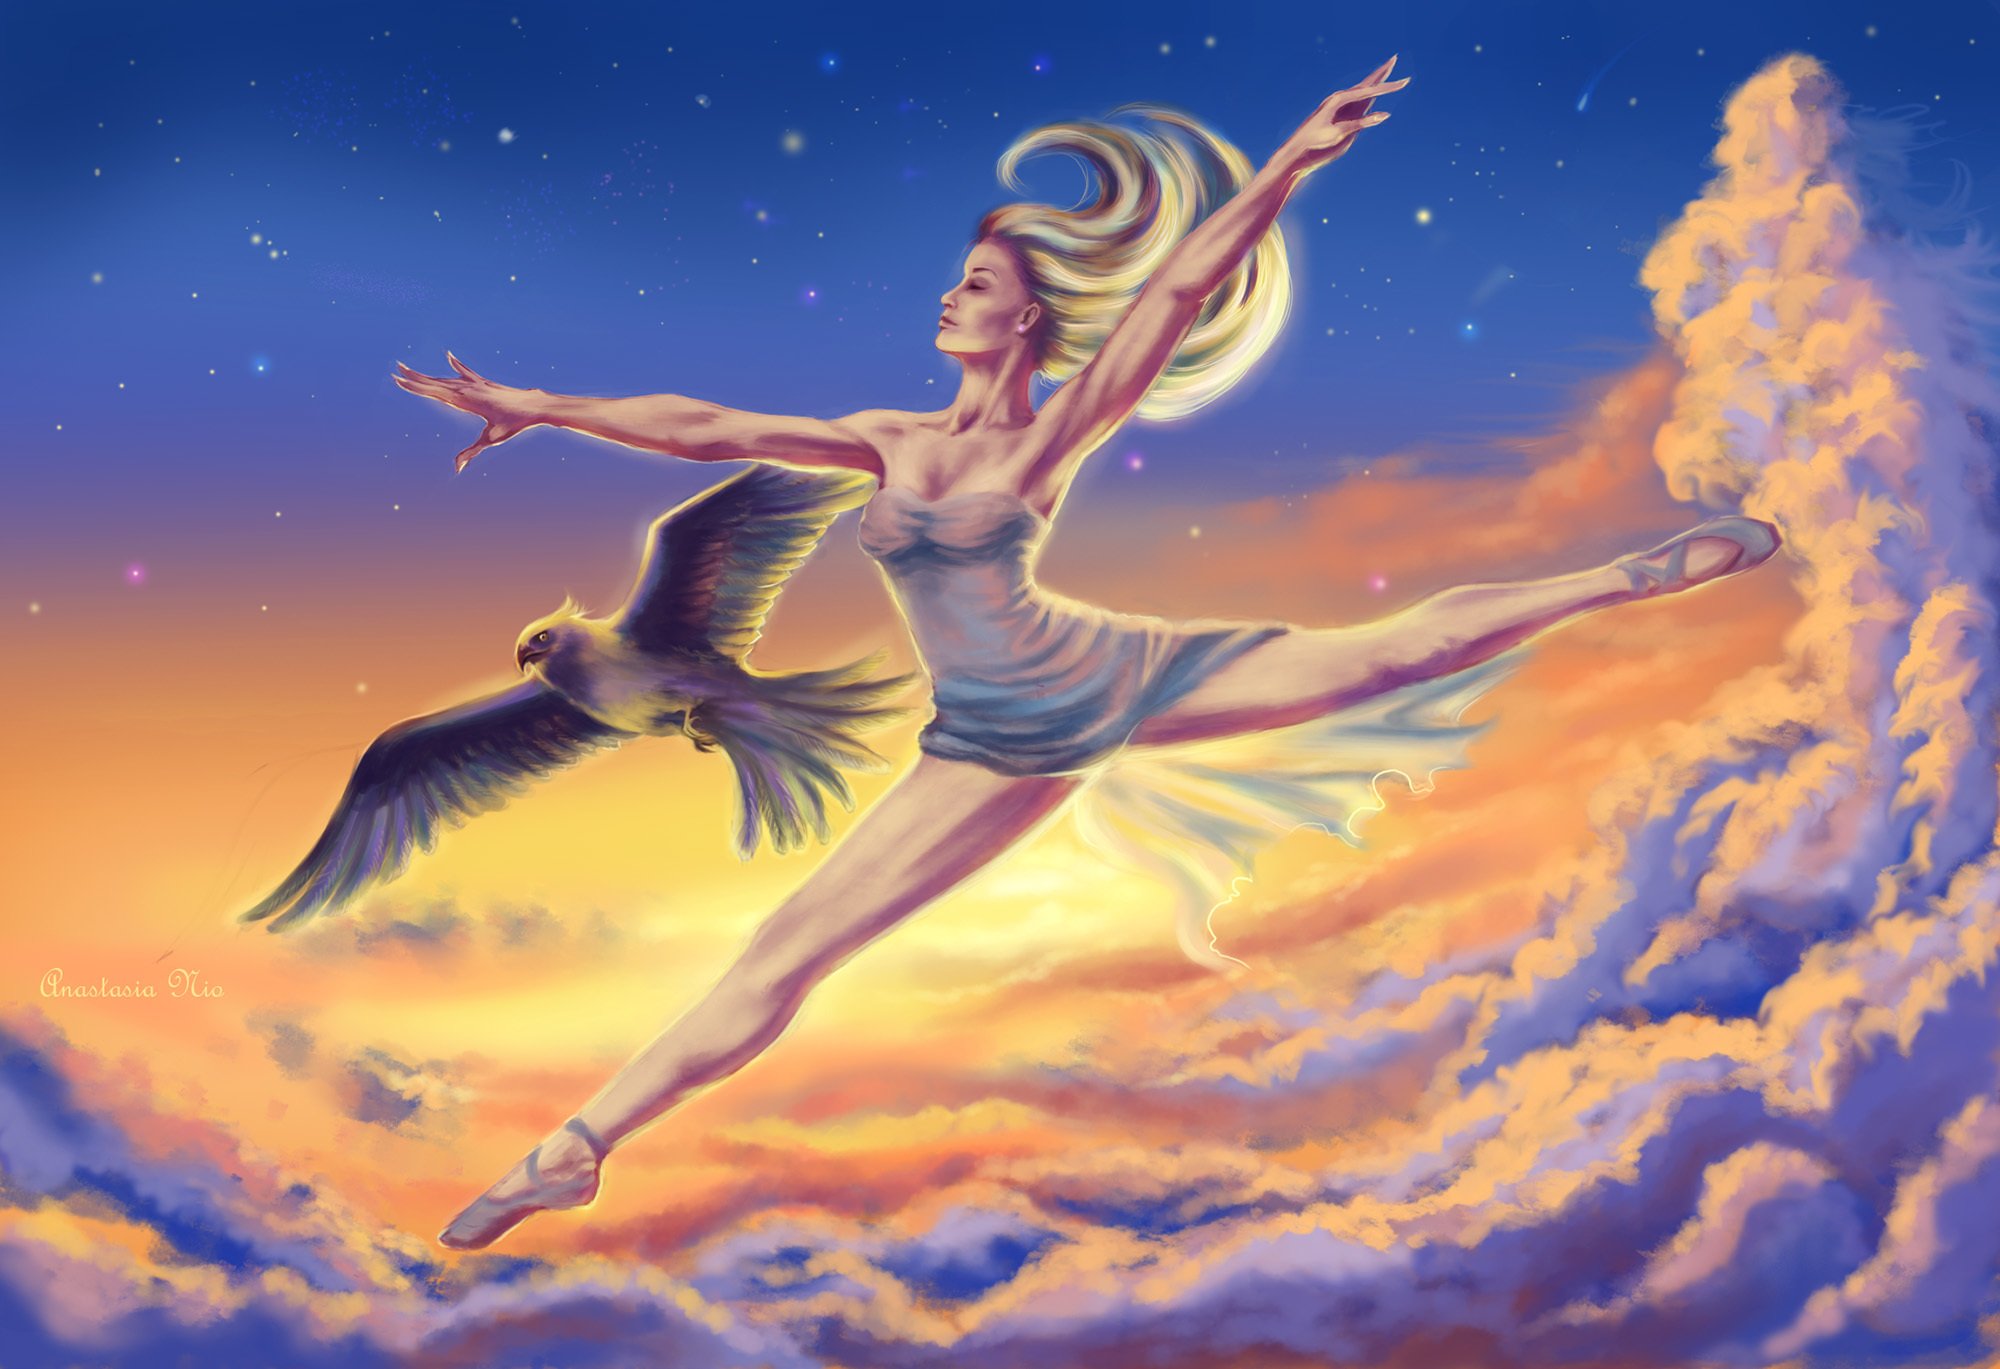 Стала птицей вольной песня. Нефела богиня. Полет души. Девушка с крыльями в небе. Нефела богиня облаков.